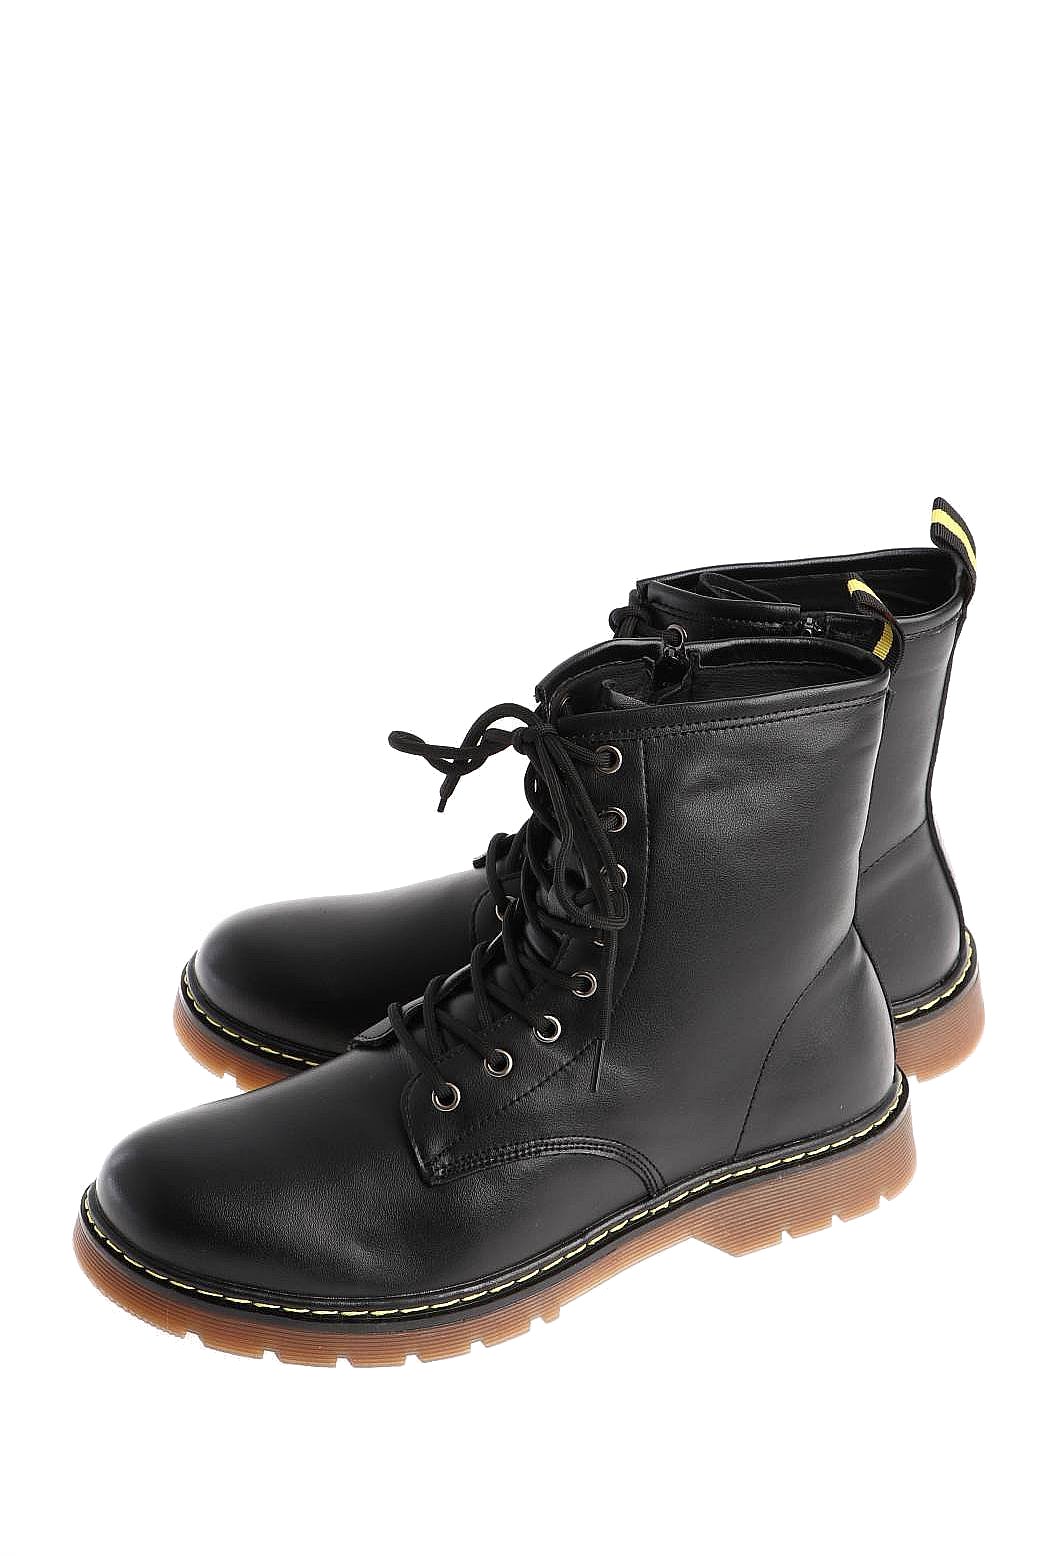 Ботинки мужские Highlander 128398-6, зимние, черные 43 RU